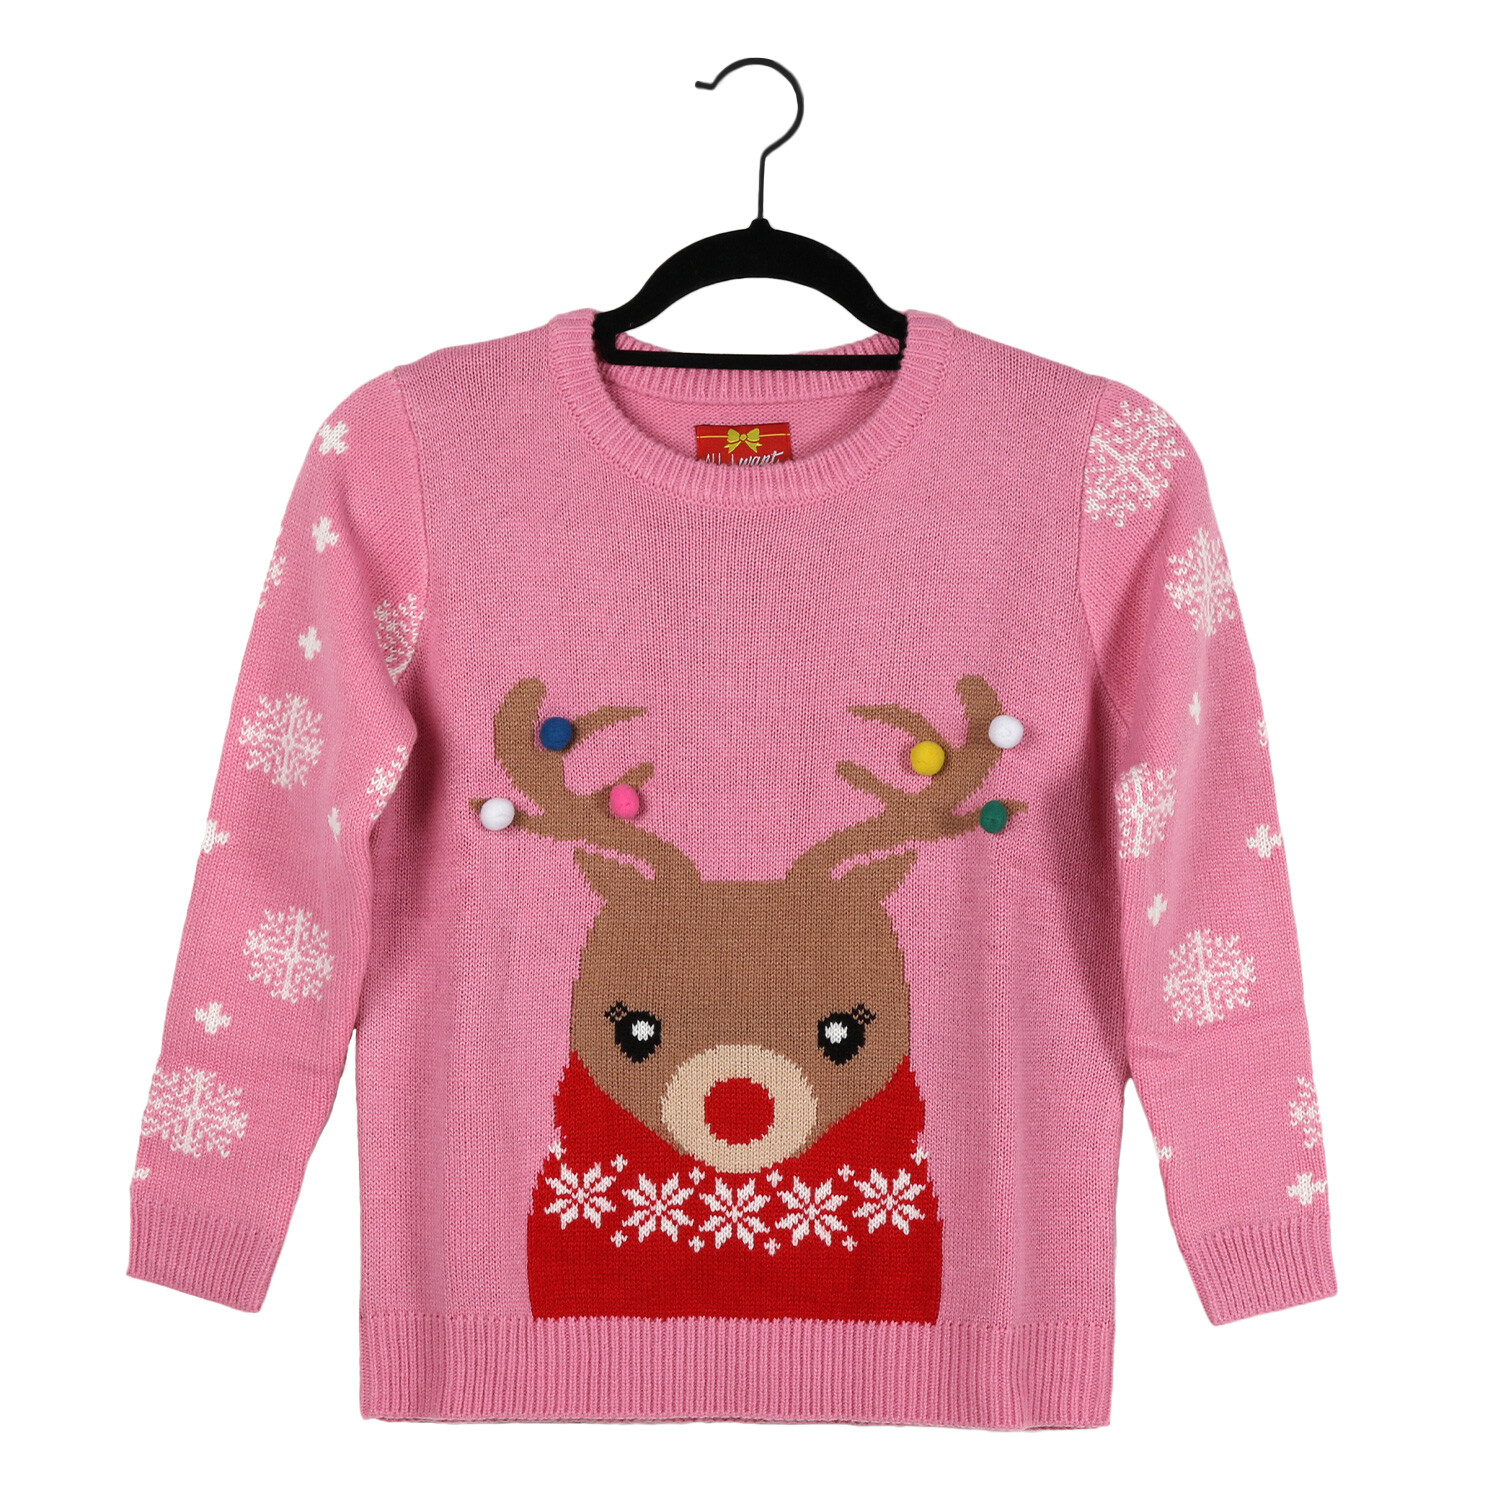 Kids Reindeer Jumper  - Pink / 8-10 Years Image 1